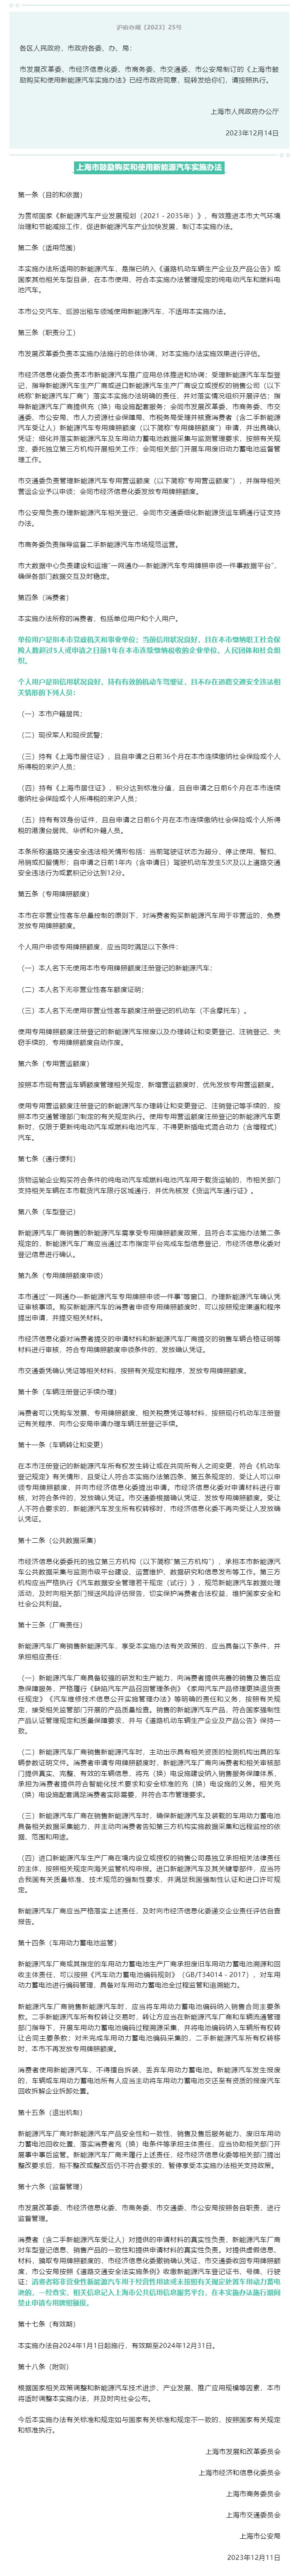 上海市人民政府办公厅关于转发市发展改革委等五部门制订的《上海市鼓励购买和使用新能源汽车实施办法》的通.png